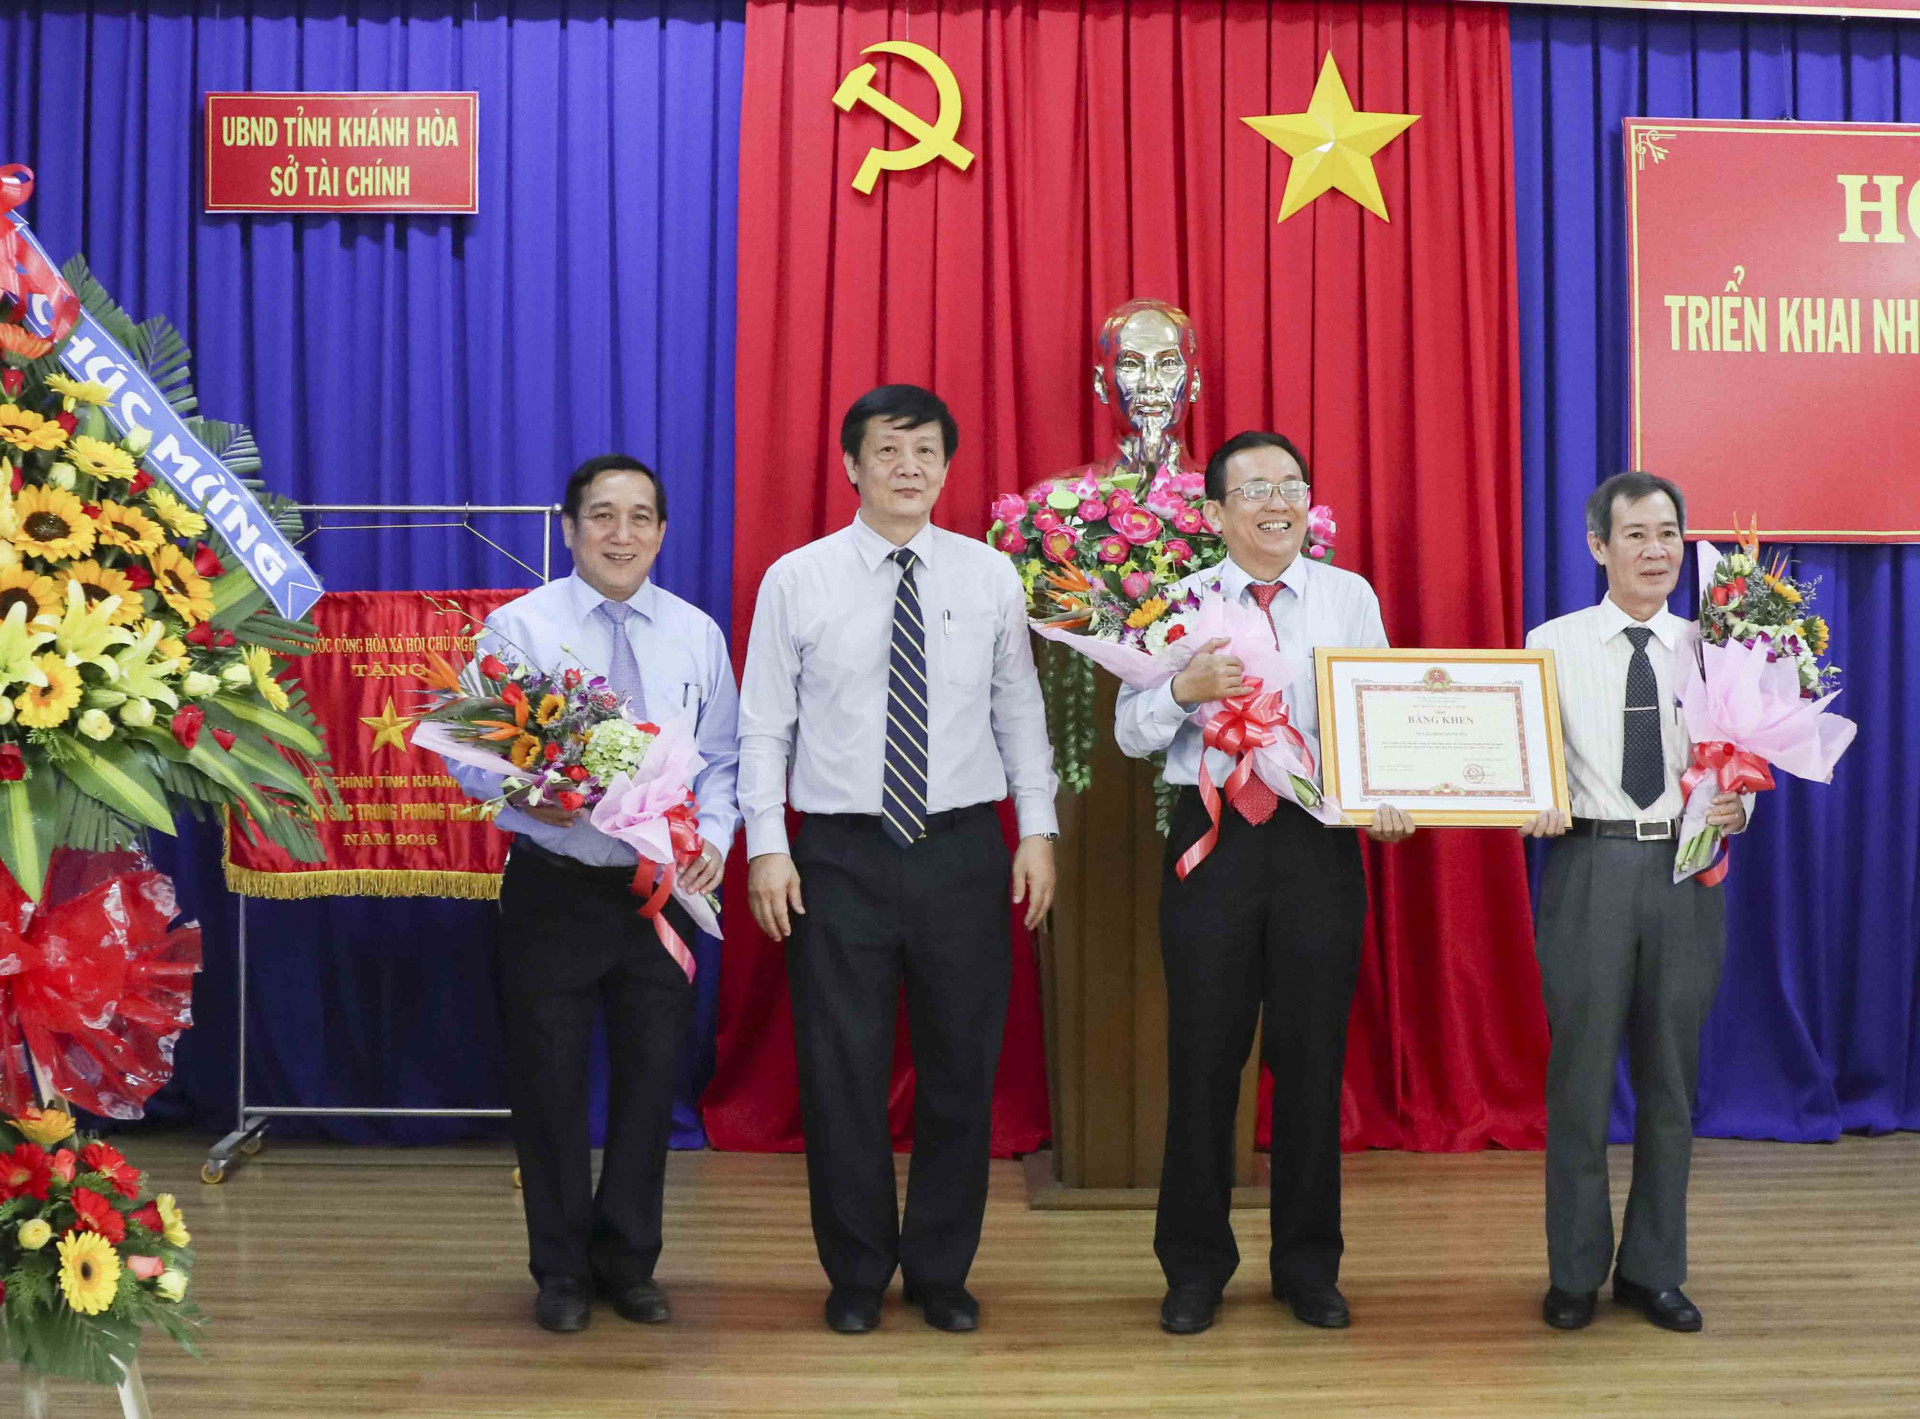 Ông Trần Sơn Hải trao bằng khen của Bộ Tài chính cho Sở Tài chính Khánh Hòa